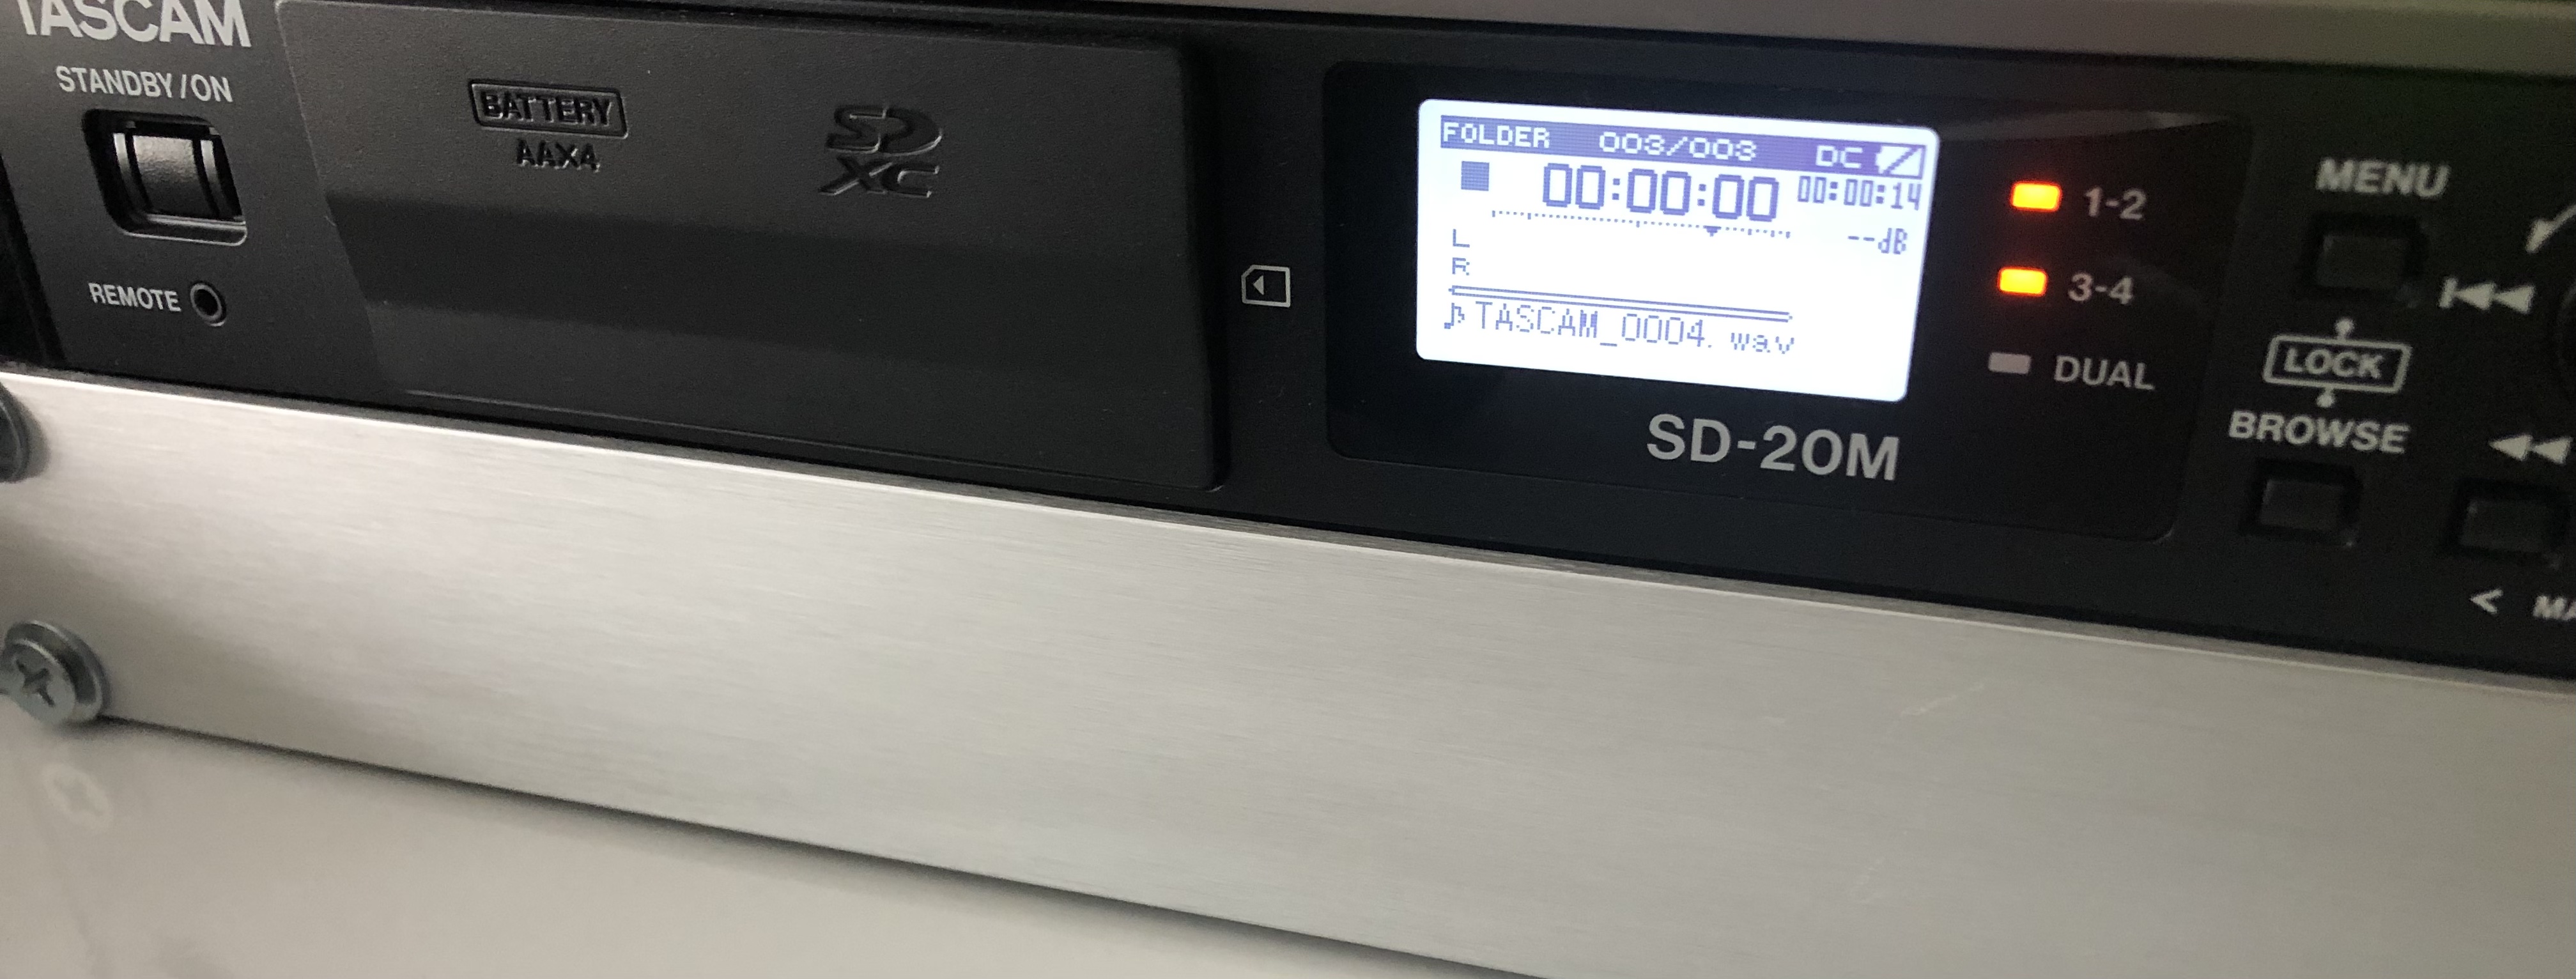 SD-20M - Tascam SD-20M - Audiofanzine